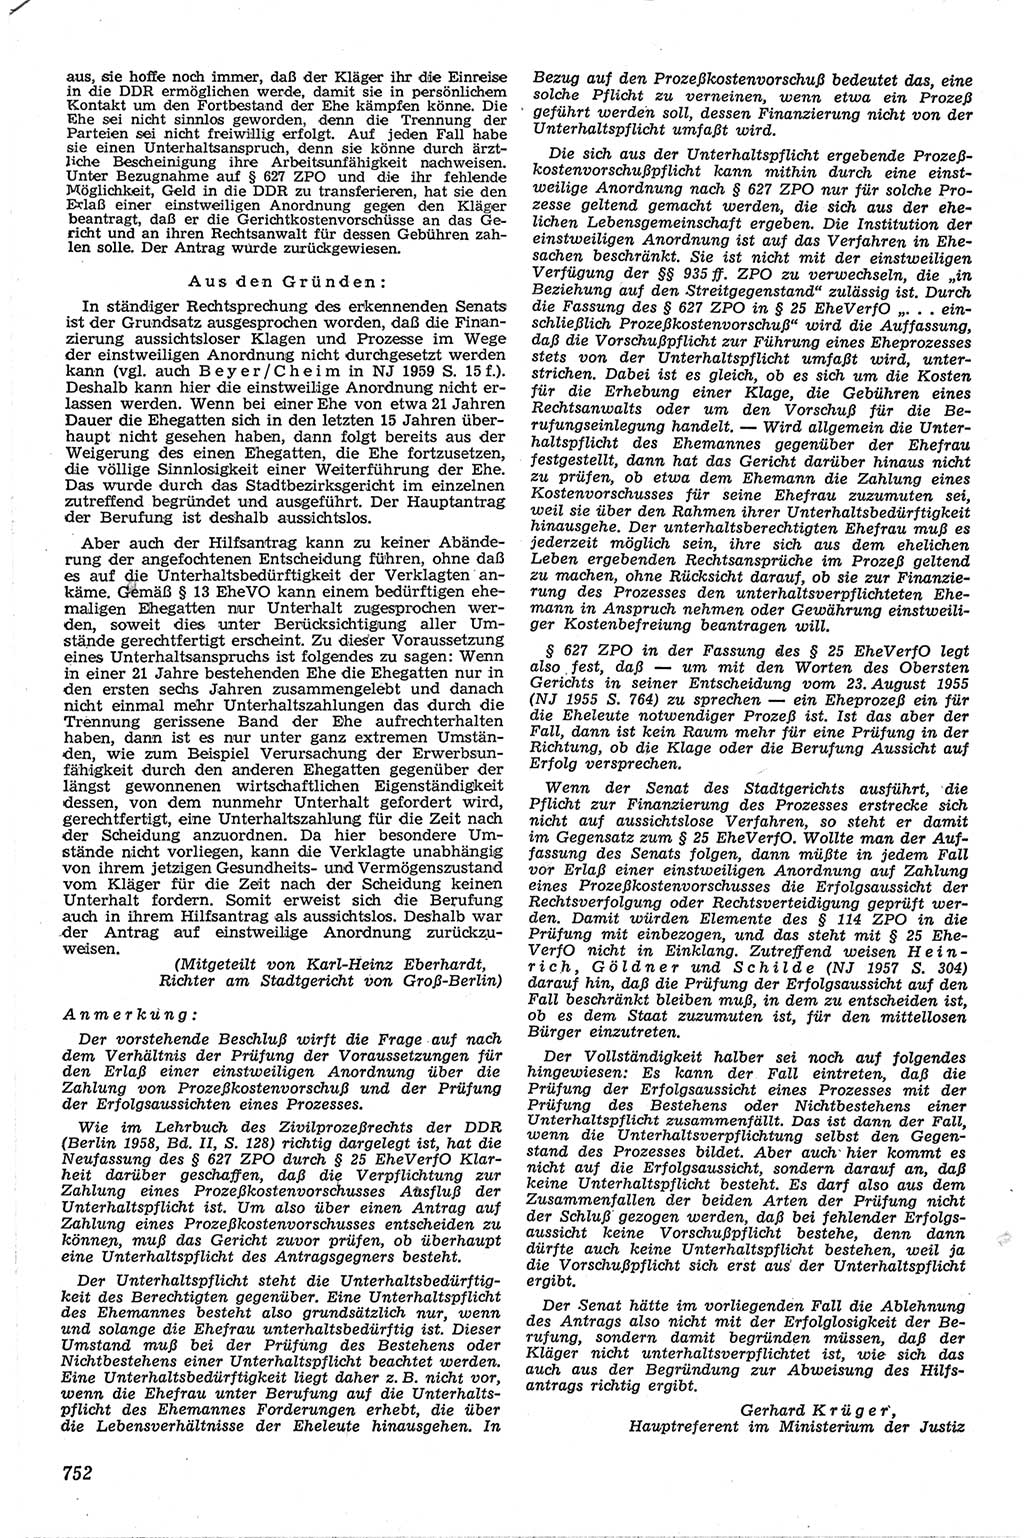 Neue Justiz (NJ), Zeitschrift für Recht und Rechtswissenschaft [Deutsche Demokratische Republik (DDR)], 13. Jahrgang 1959, Seite 752 (NJ DDR 1959, S. 752)